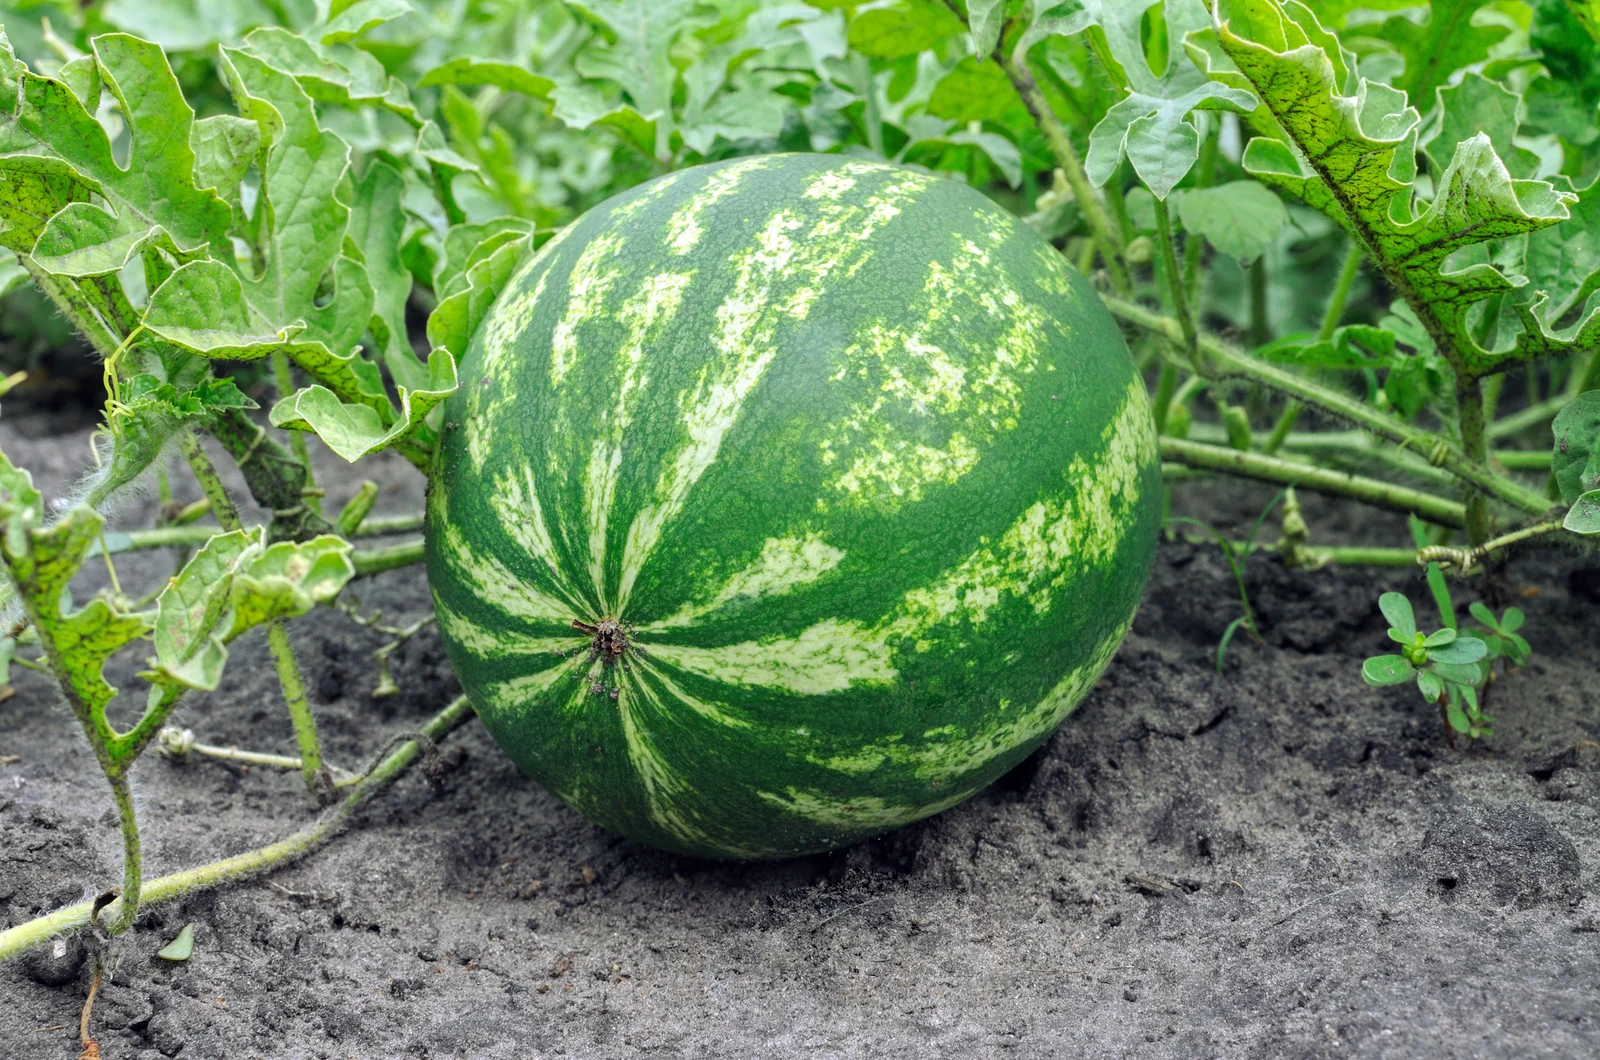 ripe watermelon in garden